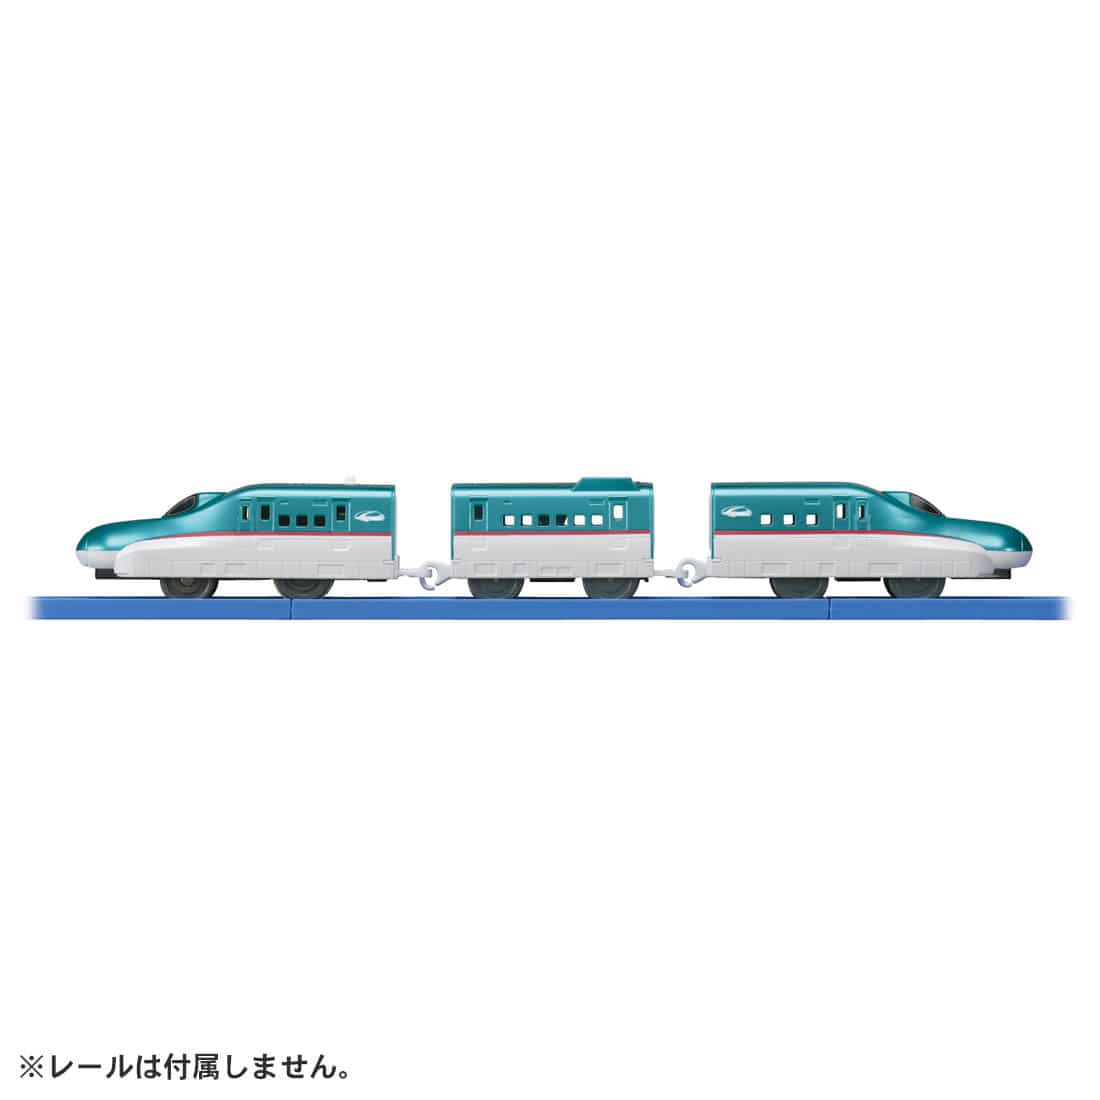 タカラトミー 187882 ES-02 E5系新幹線はやぶさ | 鉄道模型 通販 